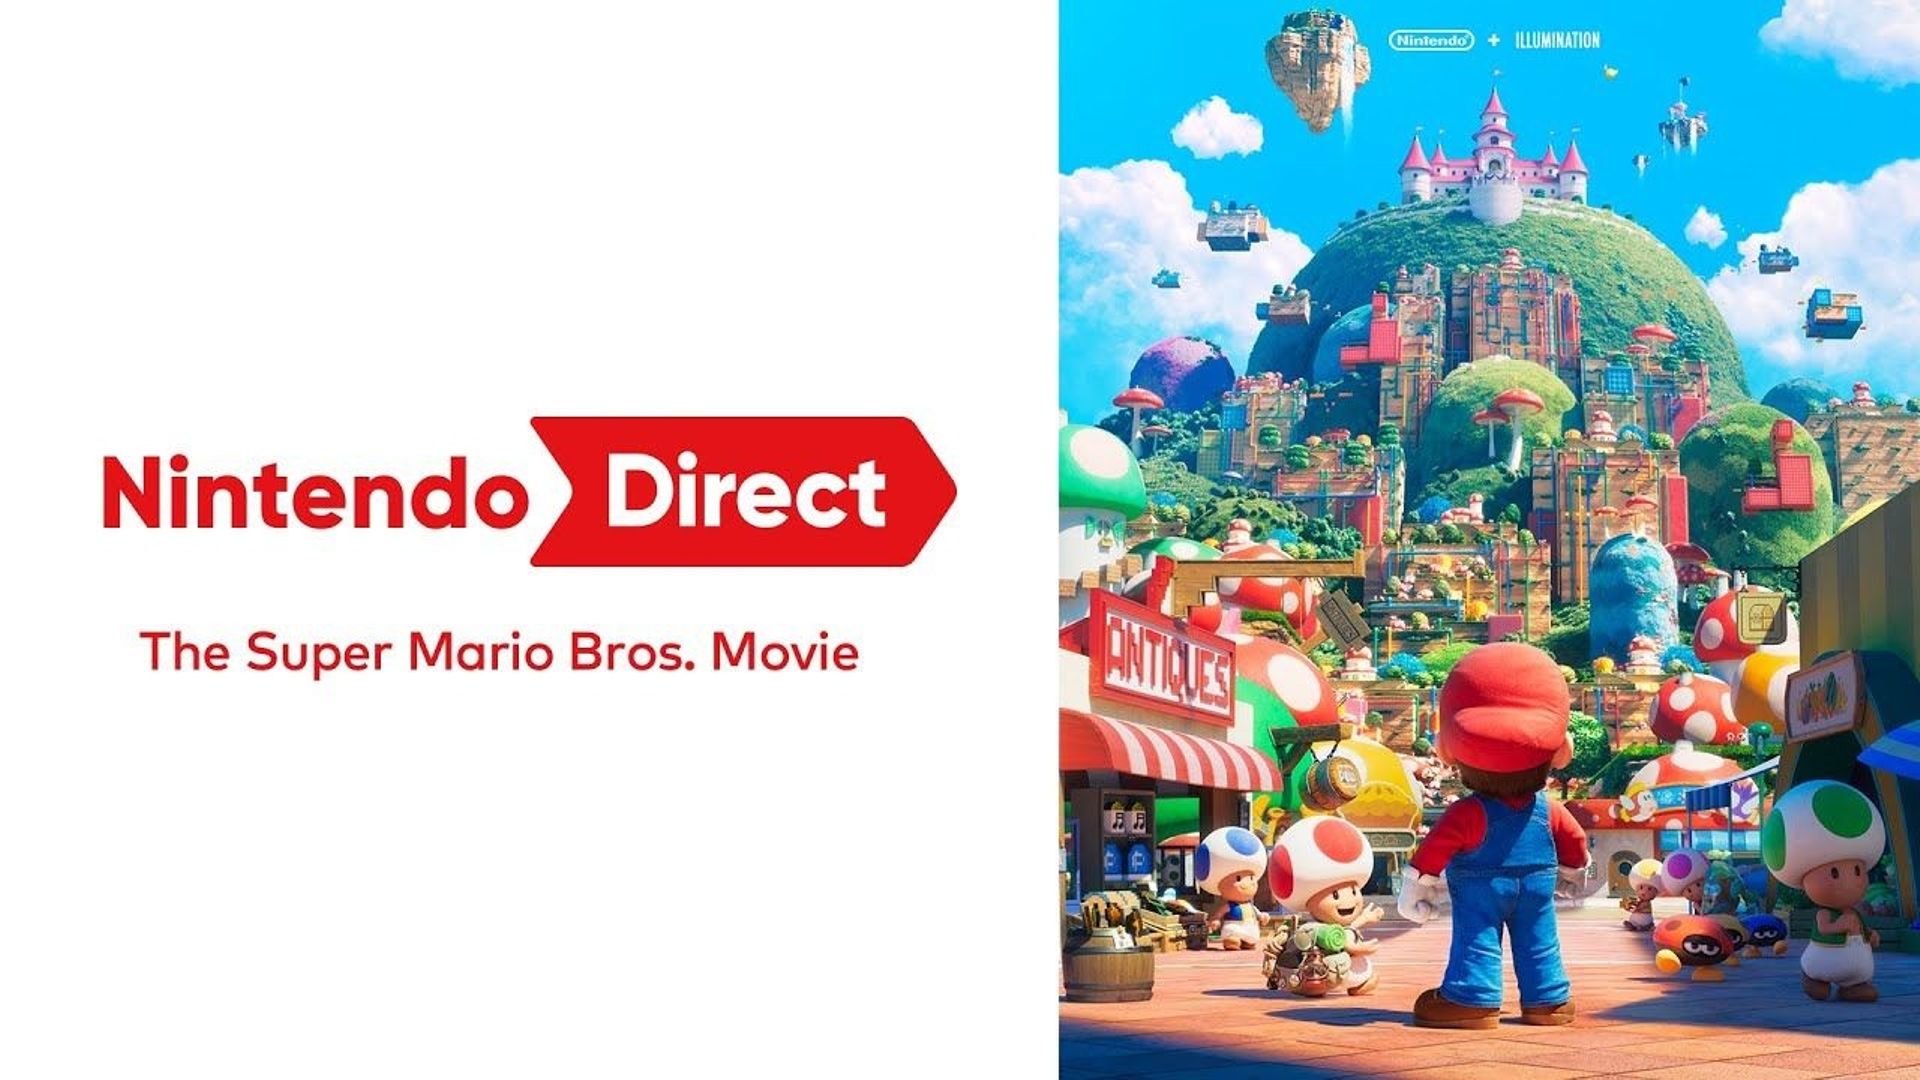 Le film The Super Mario Bros. (2023) a enfin son trailer ! rtbf.be